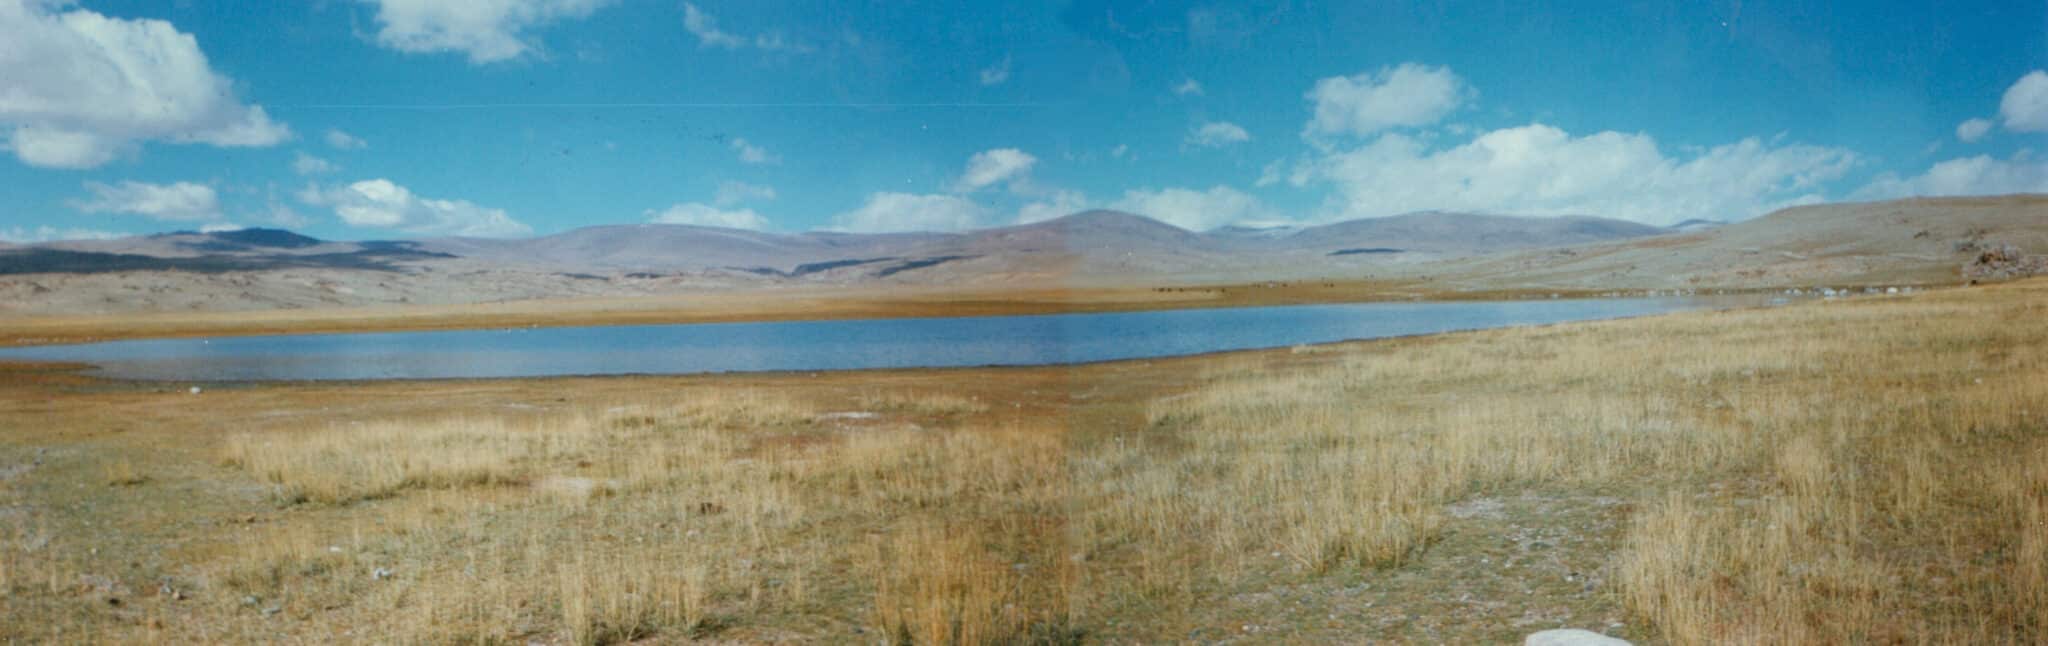 Duut Nuur Panorama Duut Sum in the Altai